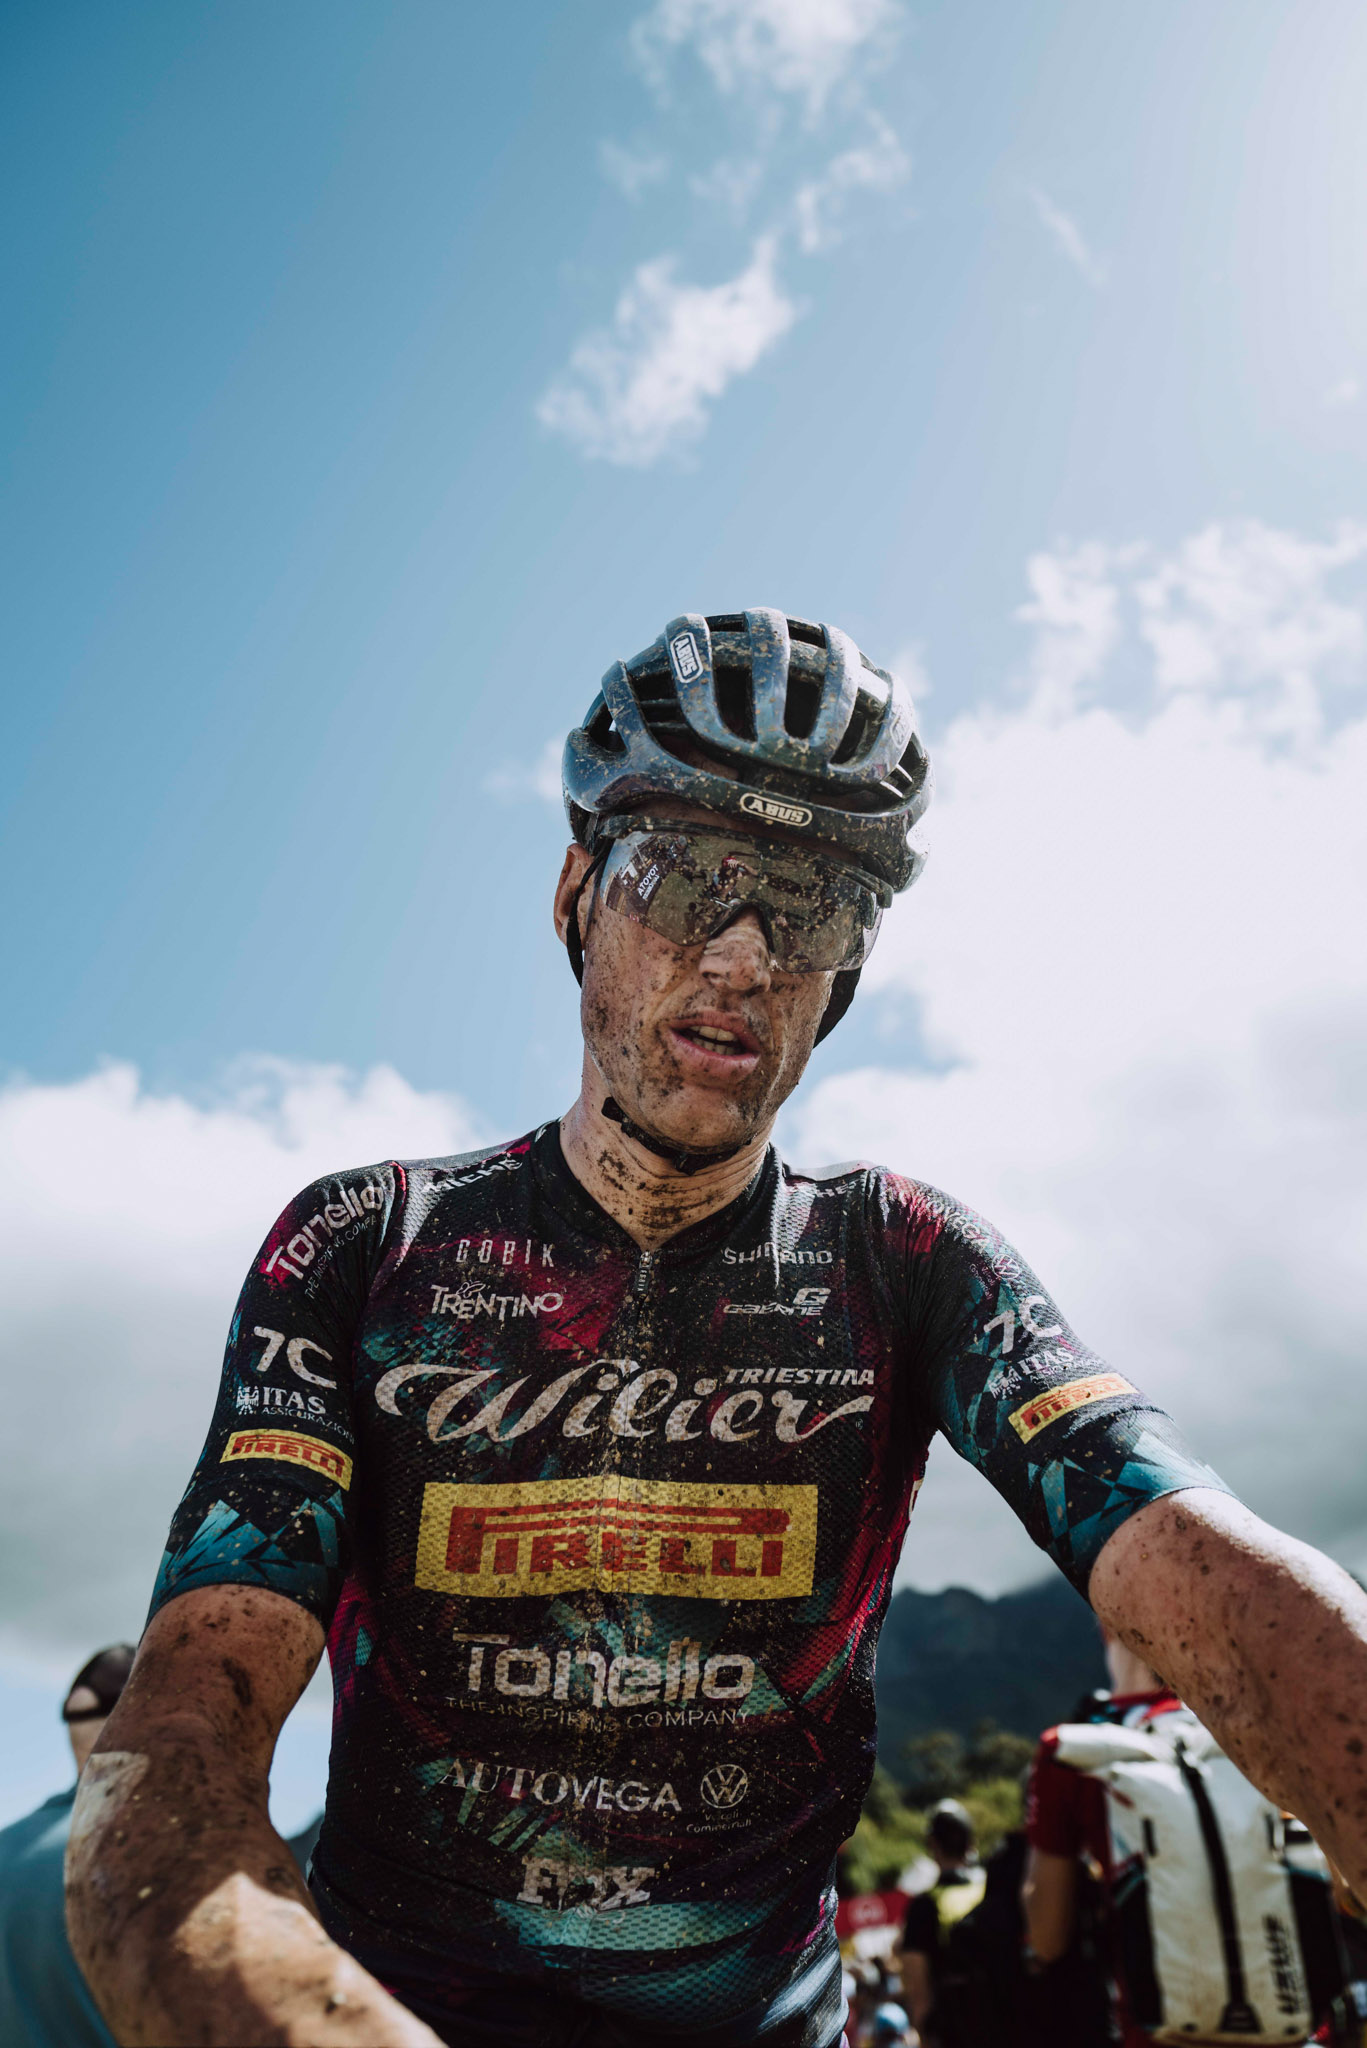 Cyclist Wout Alleman wearing Alba Optics sunglasses, riding a mountainbike